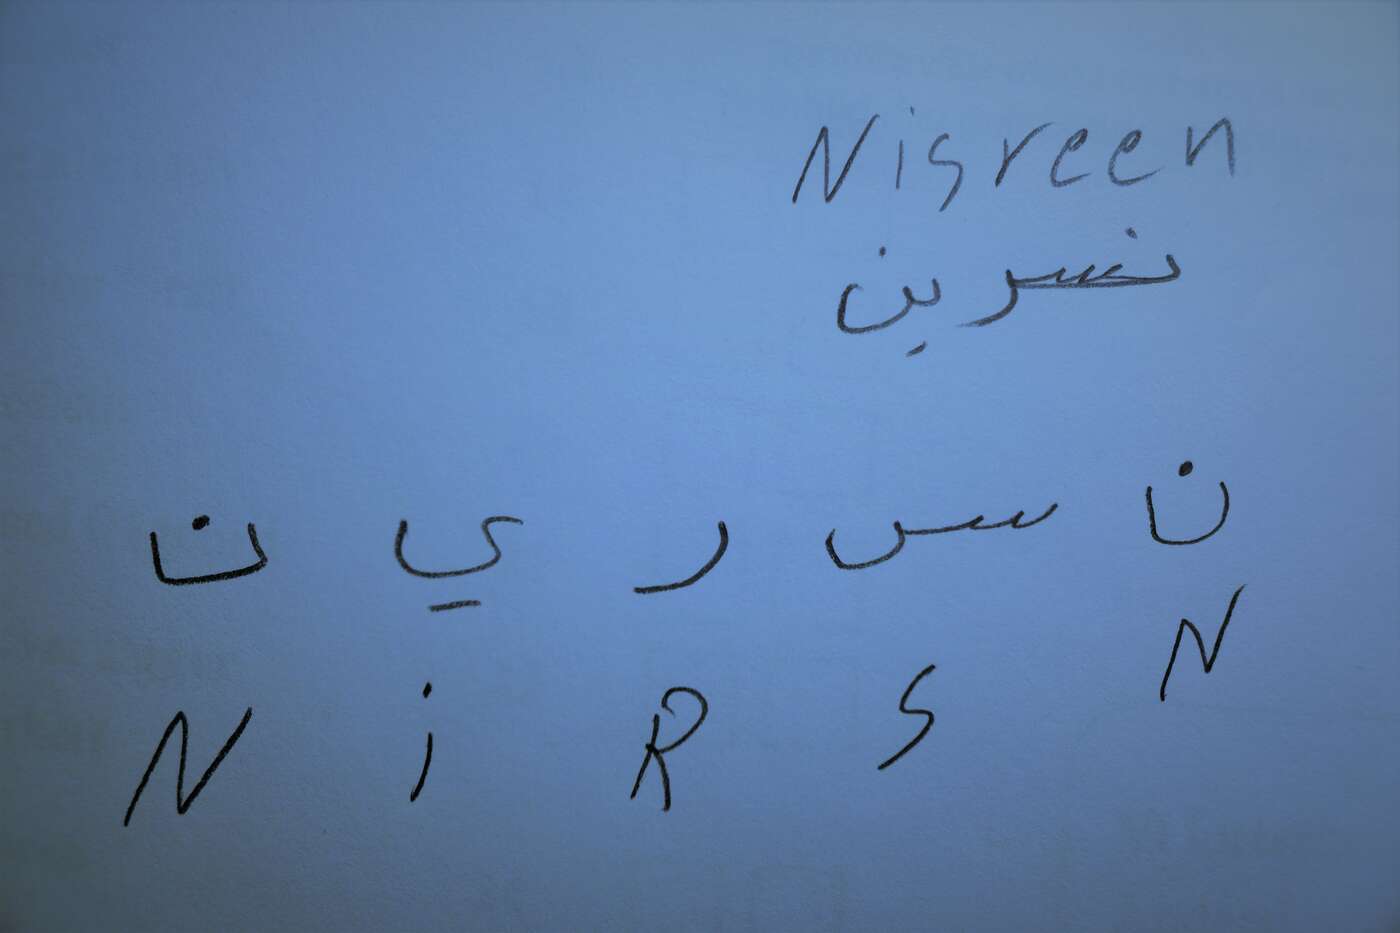 Nisreen aus meinem Sprachkurs zeigt mir, wie man ihren Namen auf Arabisch schreibt